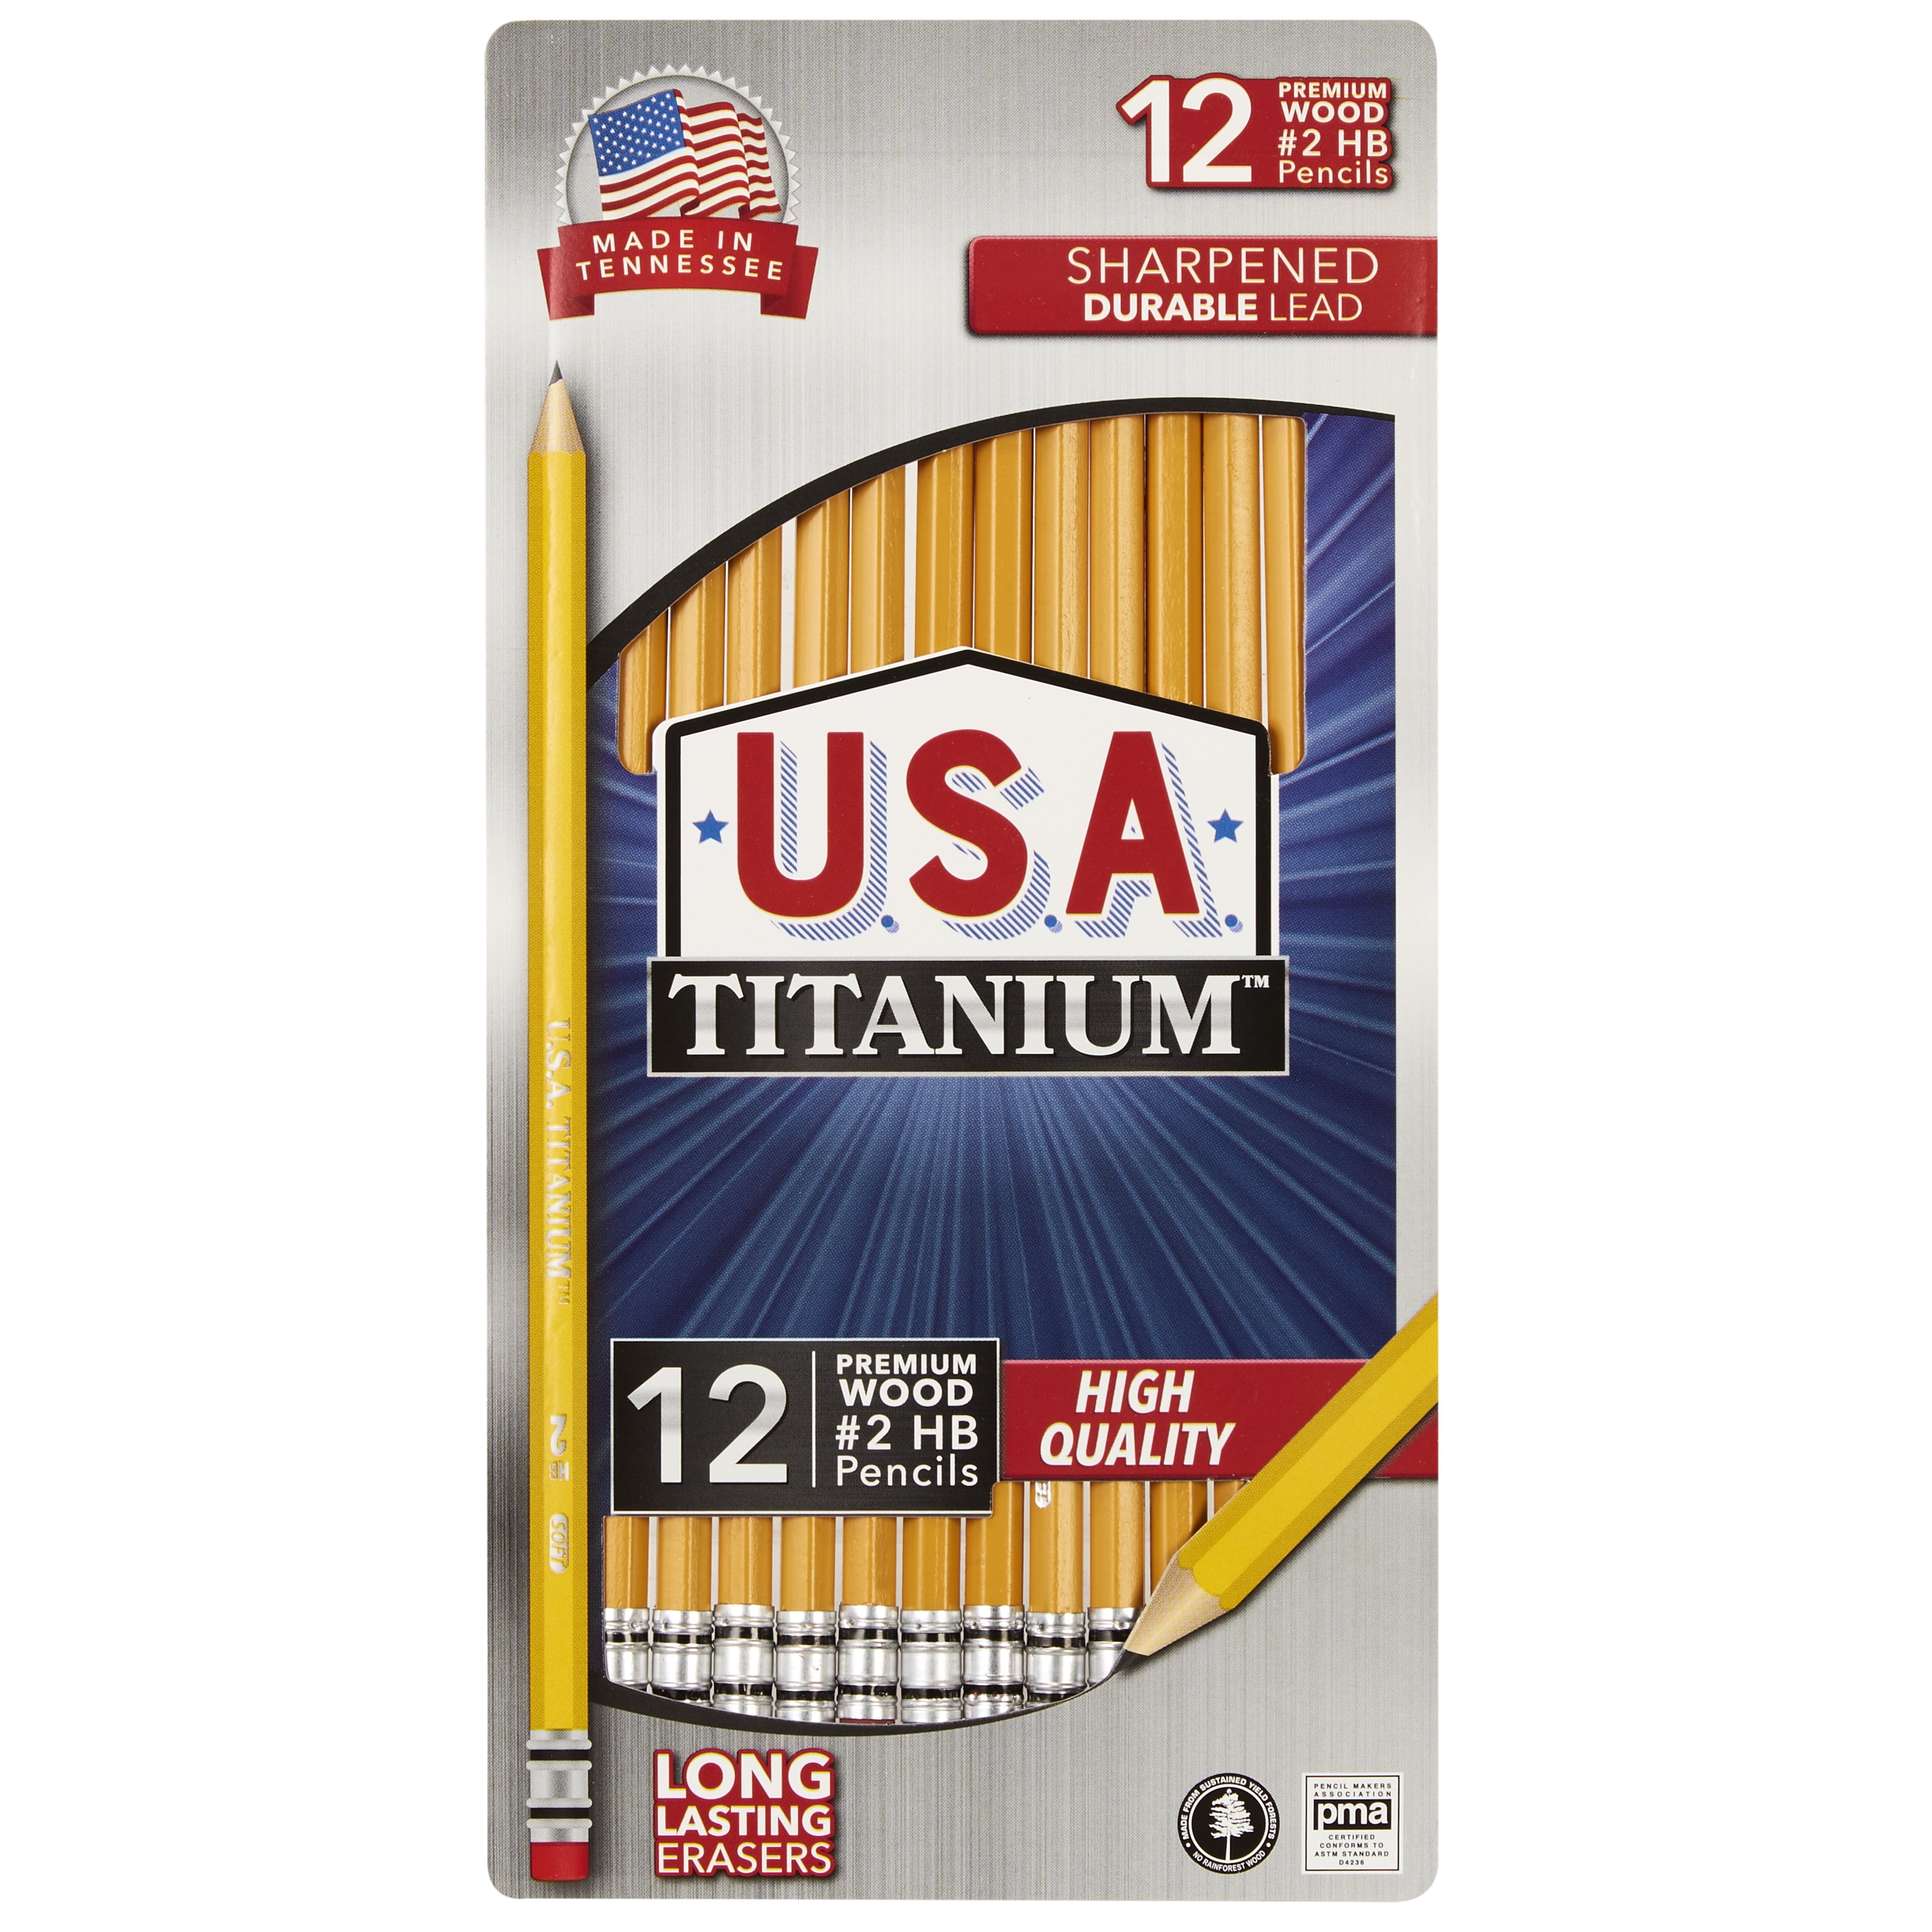 USA Titanium Premium Yellow No.2 Pencils 12 Count Sharpened Woodcase Pencils